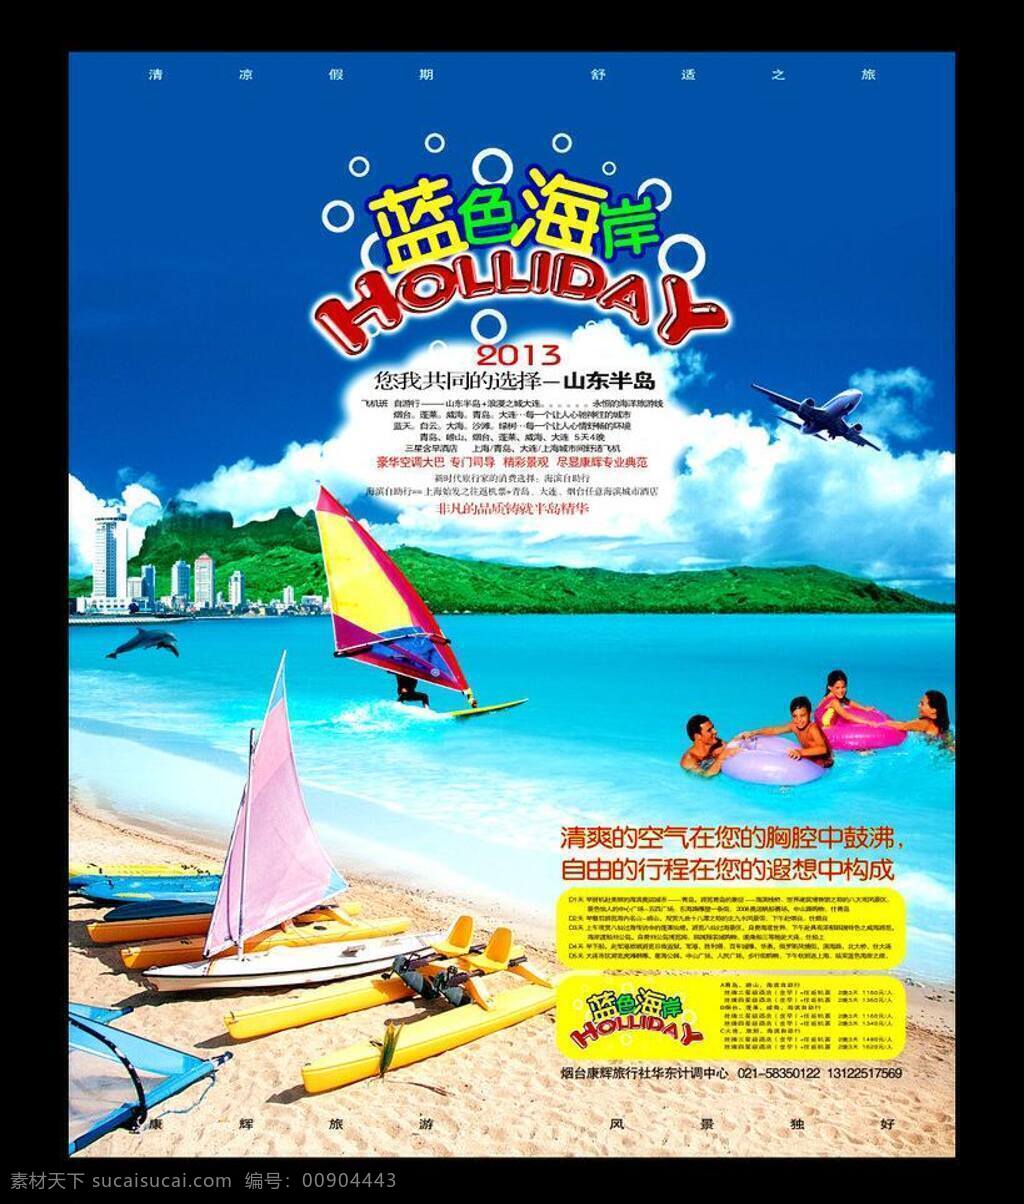 海边 海滩 凉爽 旅游 清凉 游泳 一夏 海报 矢量 模板下载 夏天旅行社 其他海报设计